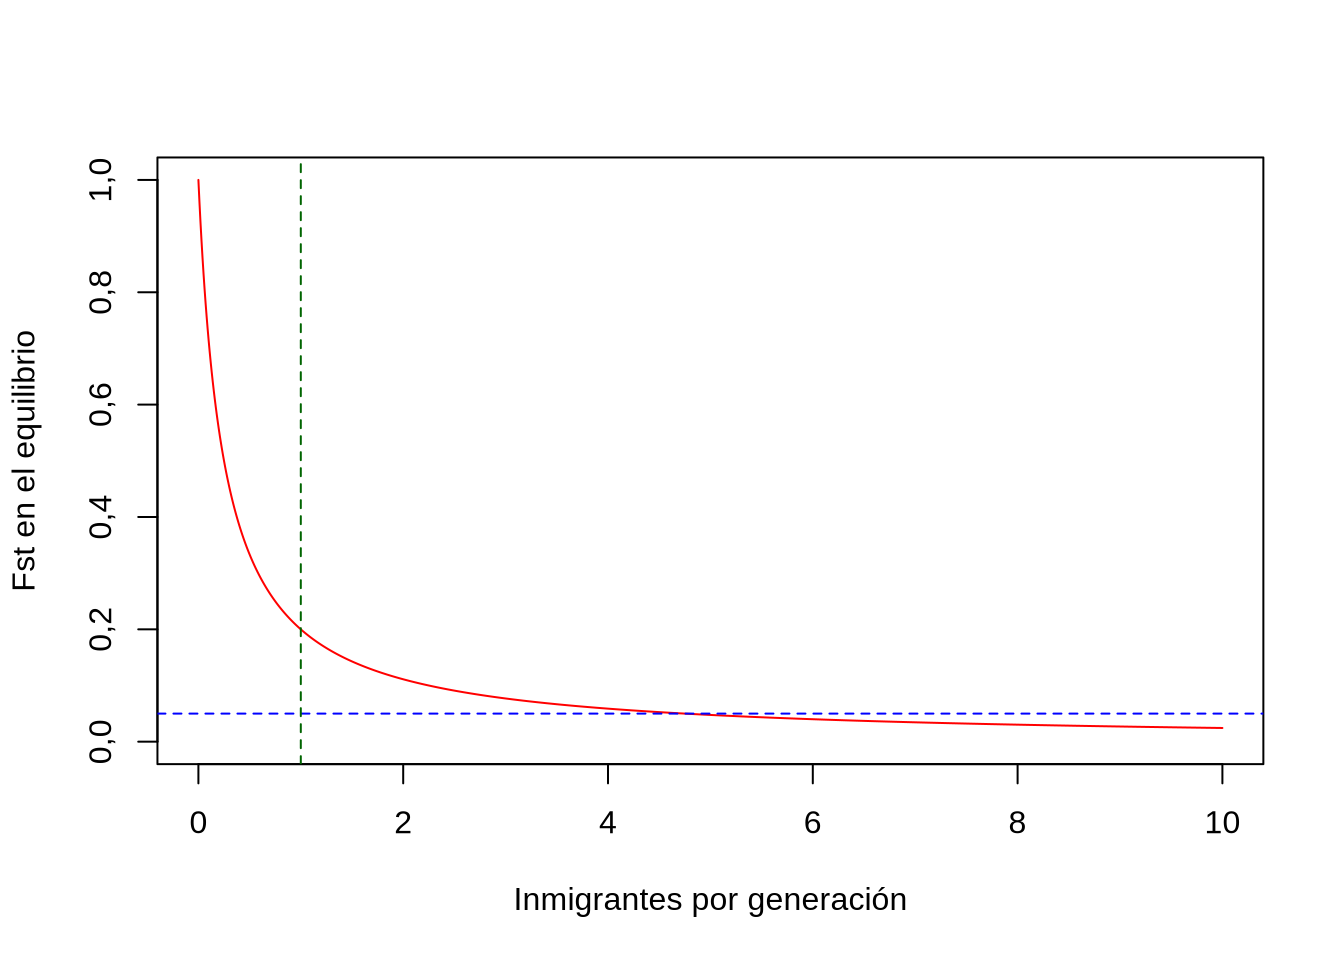 Valores de \(F_{ST}\) en el equilibrio en función del número de inmigrantes por generación. La línea verde representa el valor esperado de diferenciación genética en el equilibrio con un solo migrante por generación, que es de \(0,2\). La línea azul representa el valor \(F_{ST}=0,05\) que de acuerdo con las guías prácticas dadas por Wright representan situaciones donde casi no existe diferenciación genética.